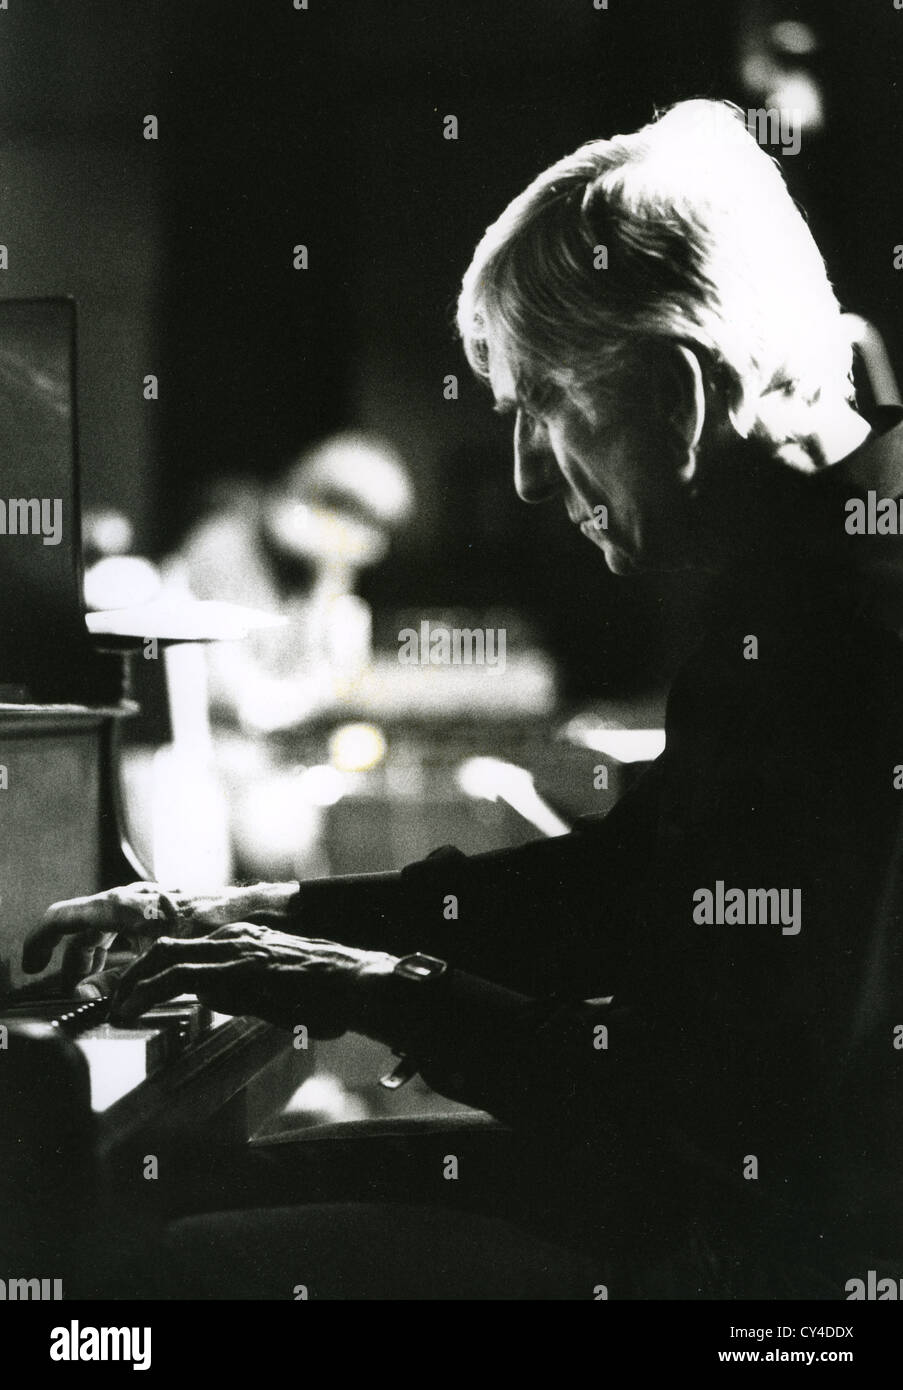 GIL,.EVANS (1912-1988) canadese pianista jazz di Glasgow, Scozia, marzo 1983. Foto Colin D. Tod Foto Stock